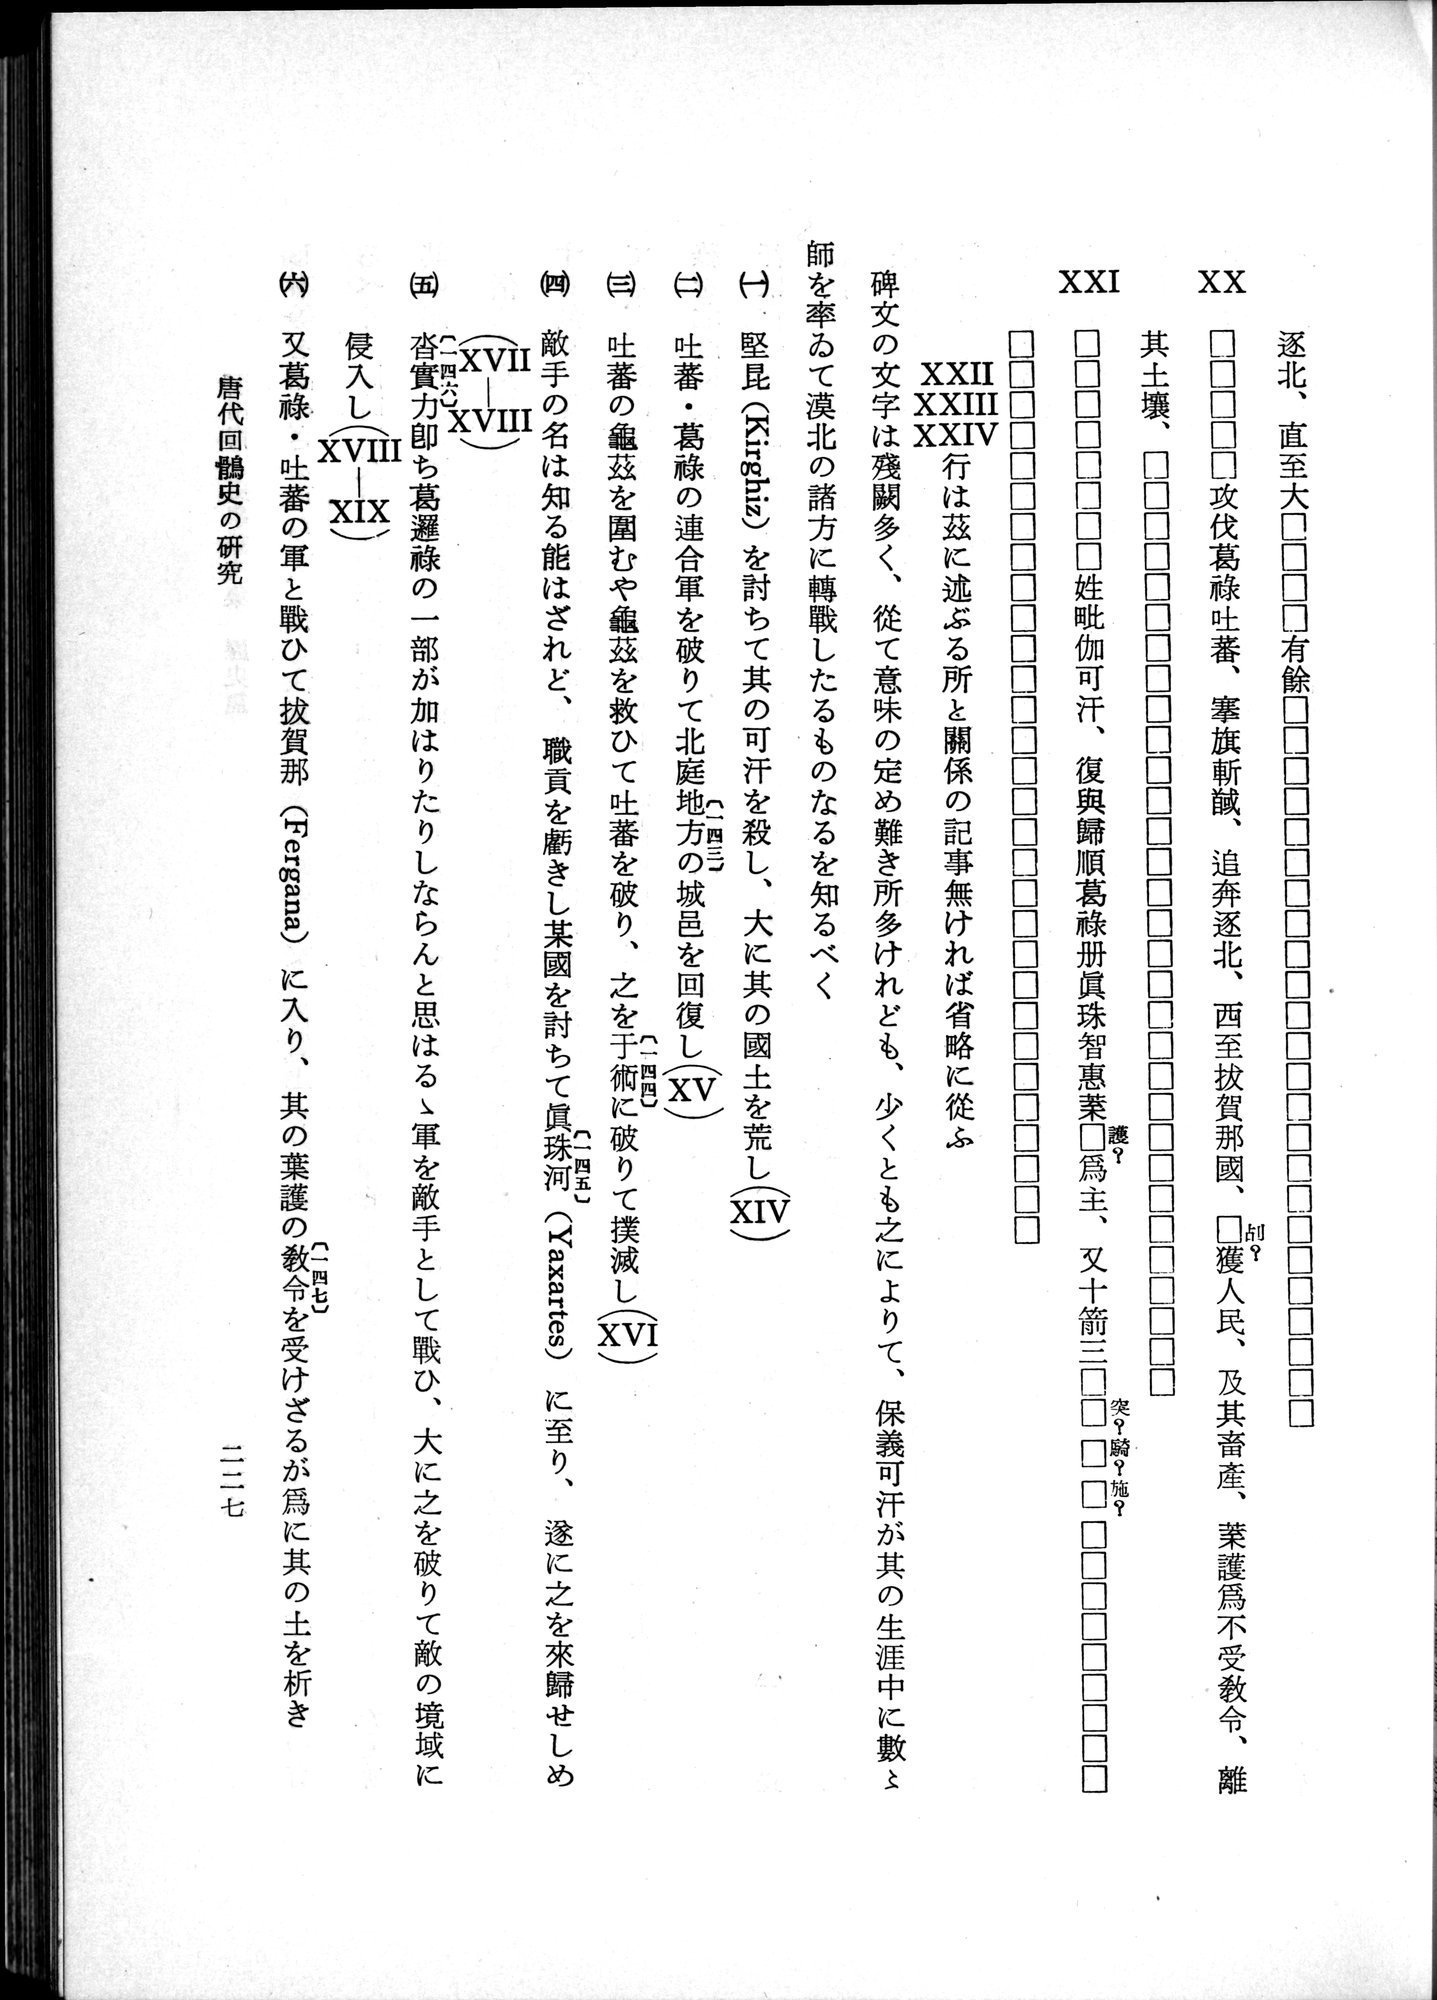 羽田博士史学論文集 : vol.1 / Page 265 (Grayscale High Resolution Image)